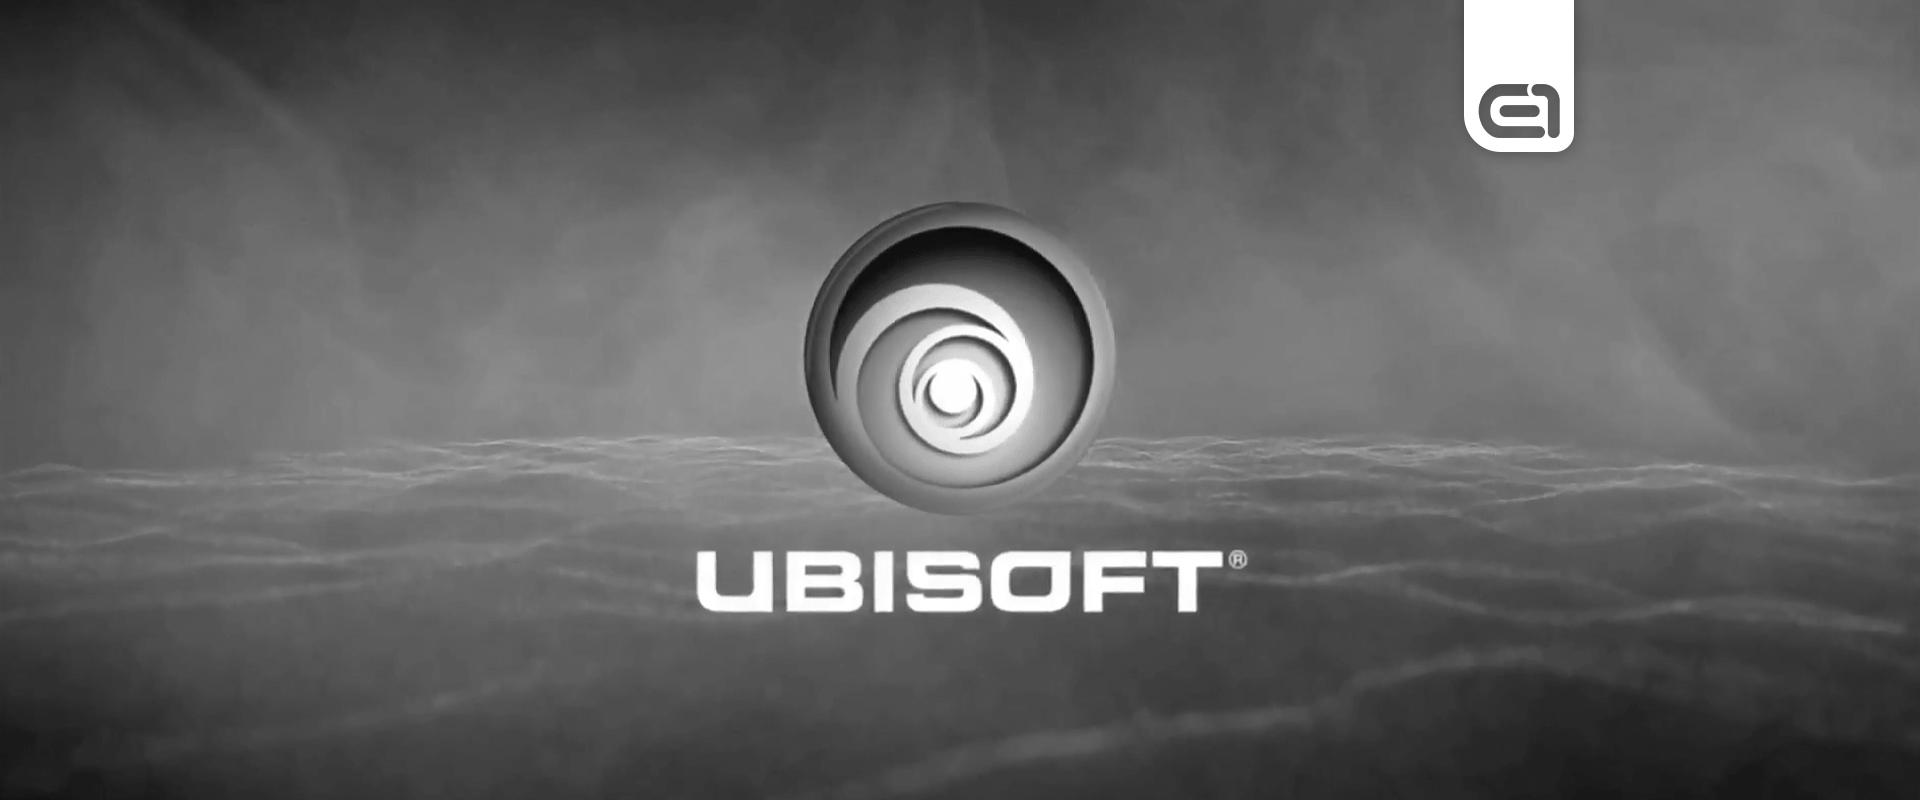 Tragikusan fiatalon elhunyt a Ubisoft egyik vezető designere